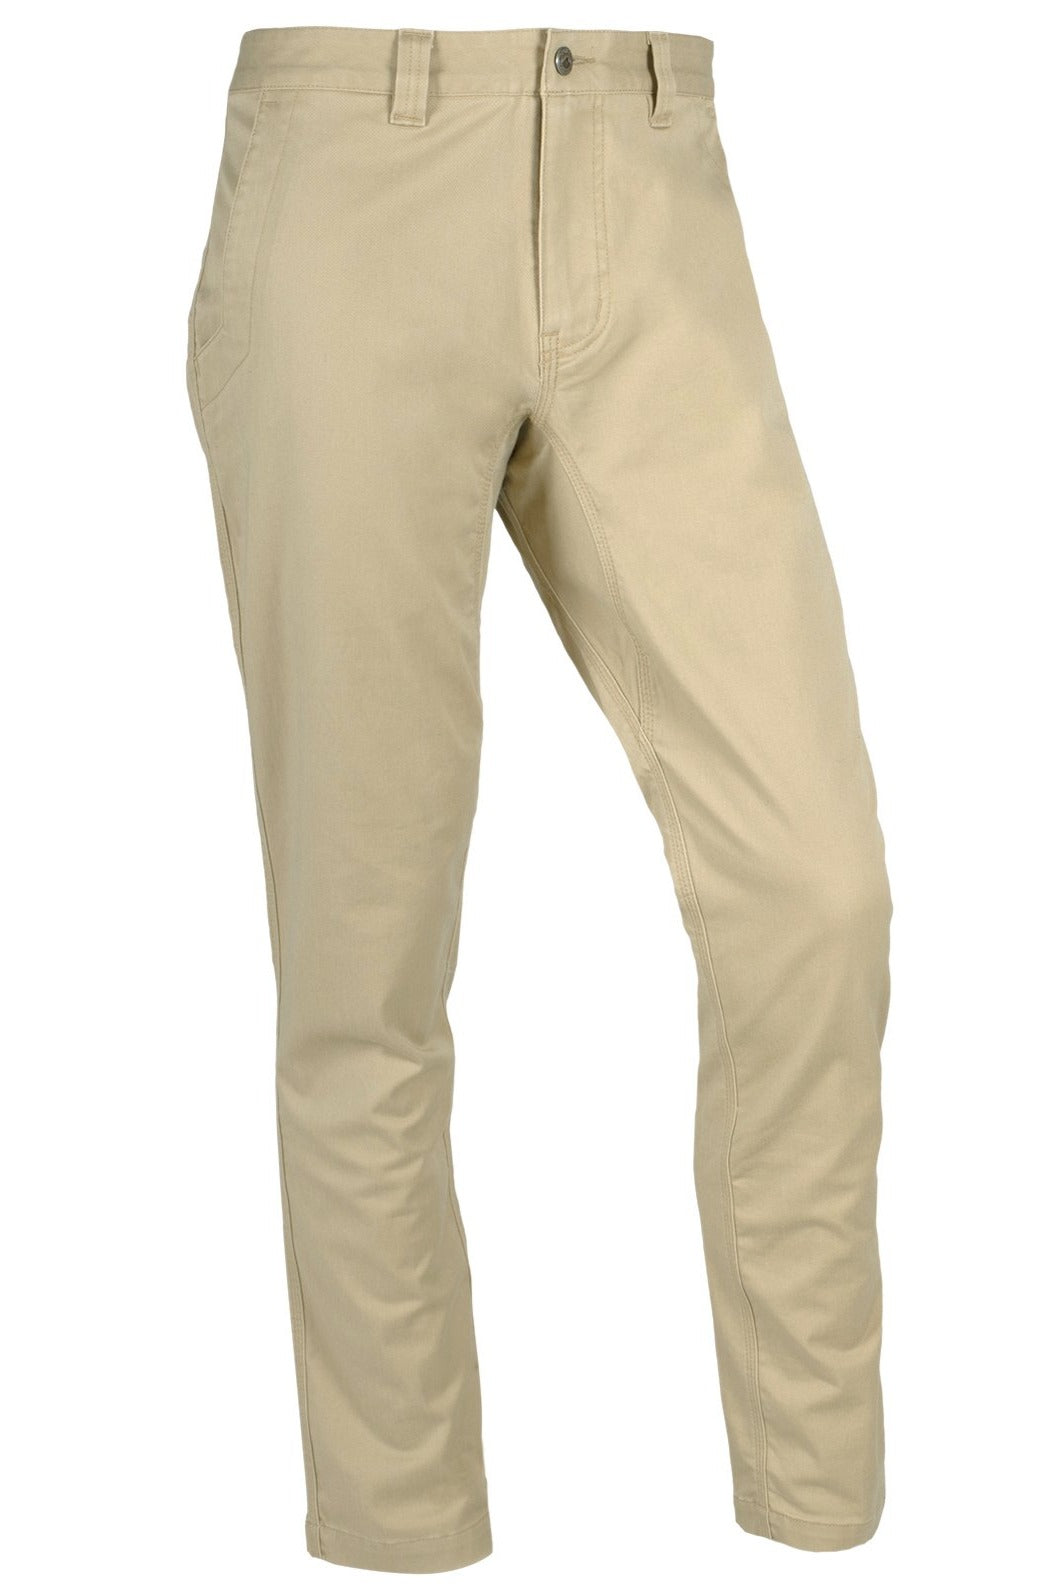 Mountain Khaki Teton Pant Slim Fit- Sand